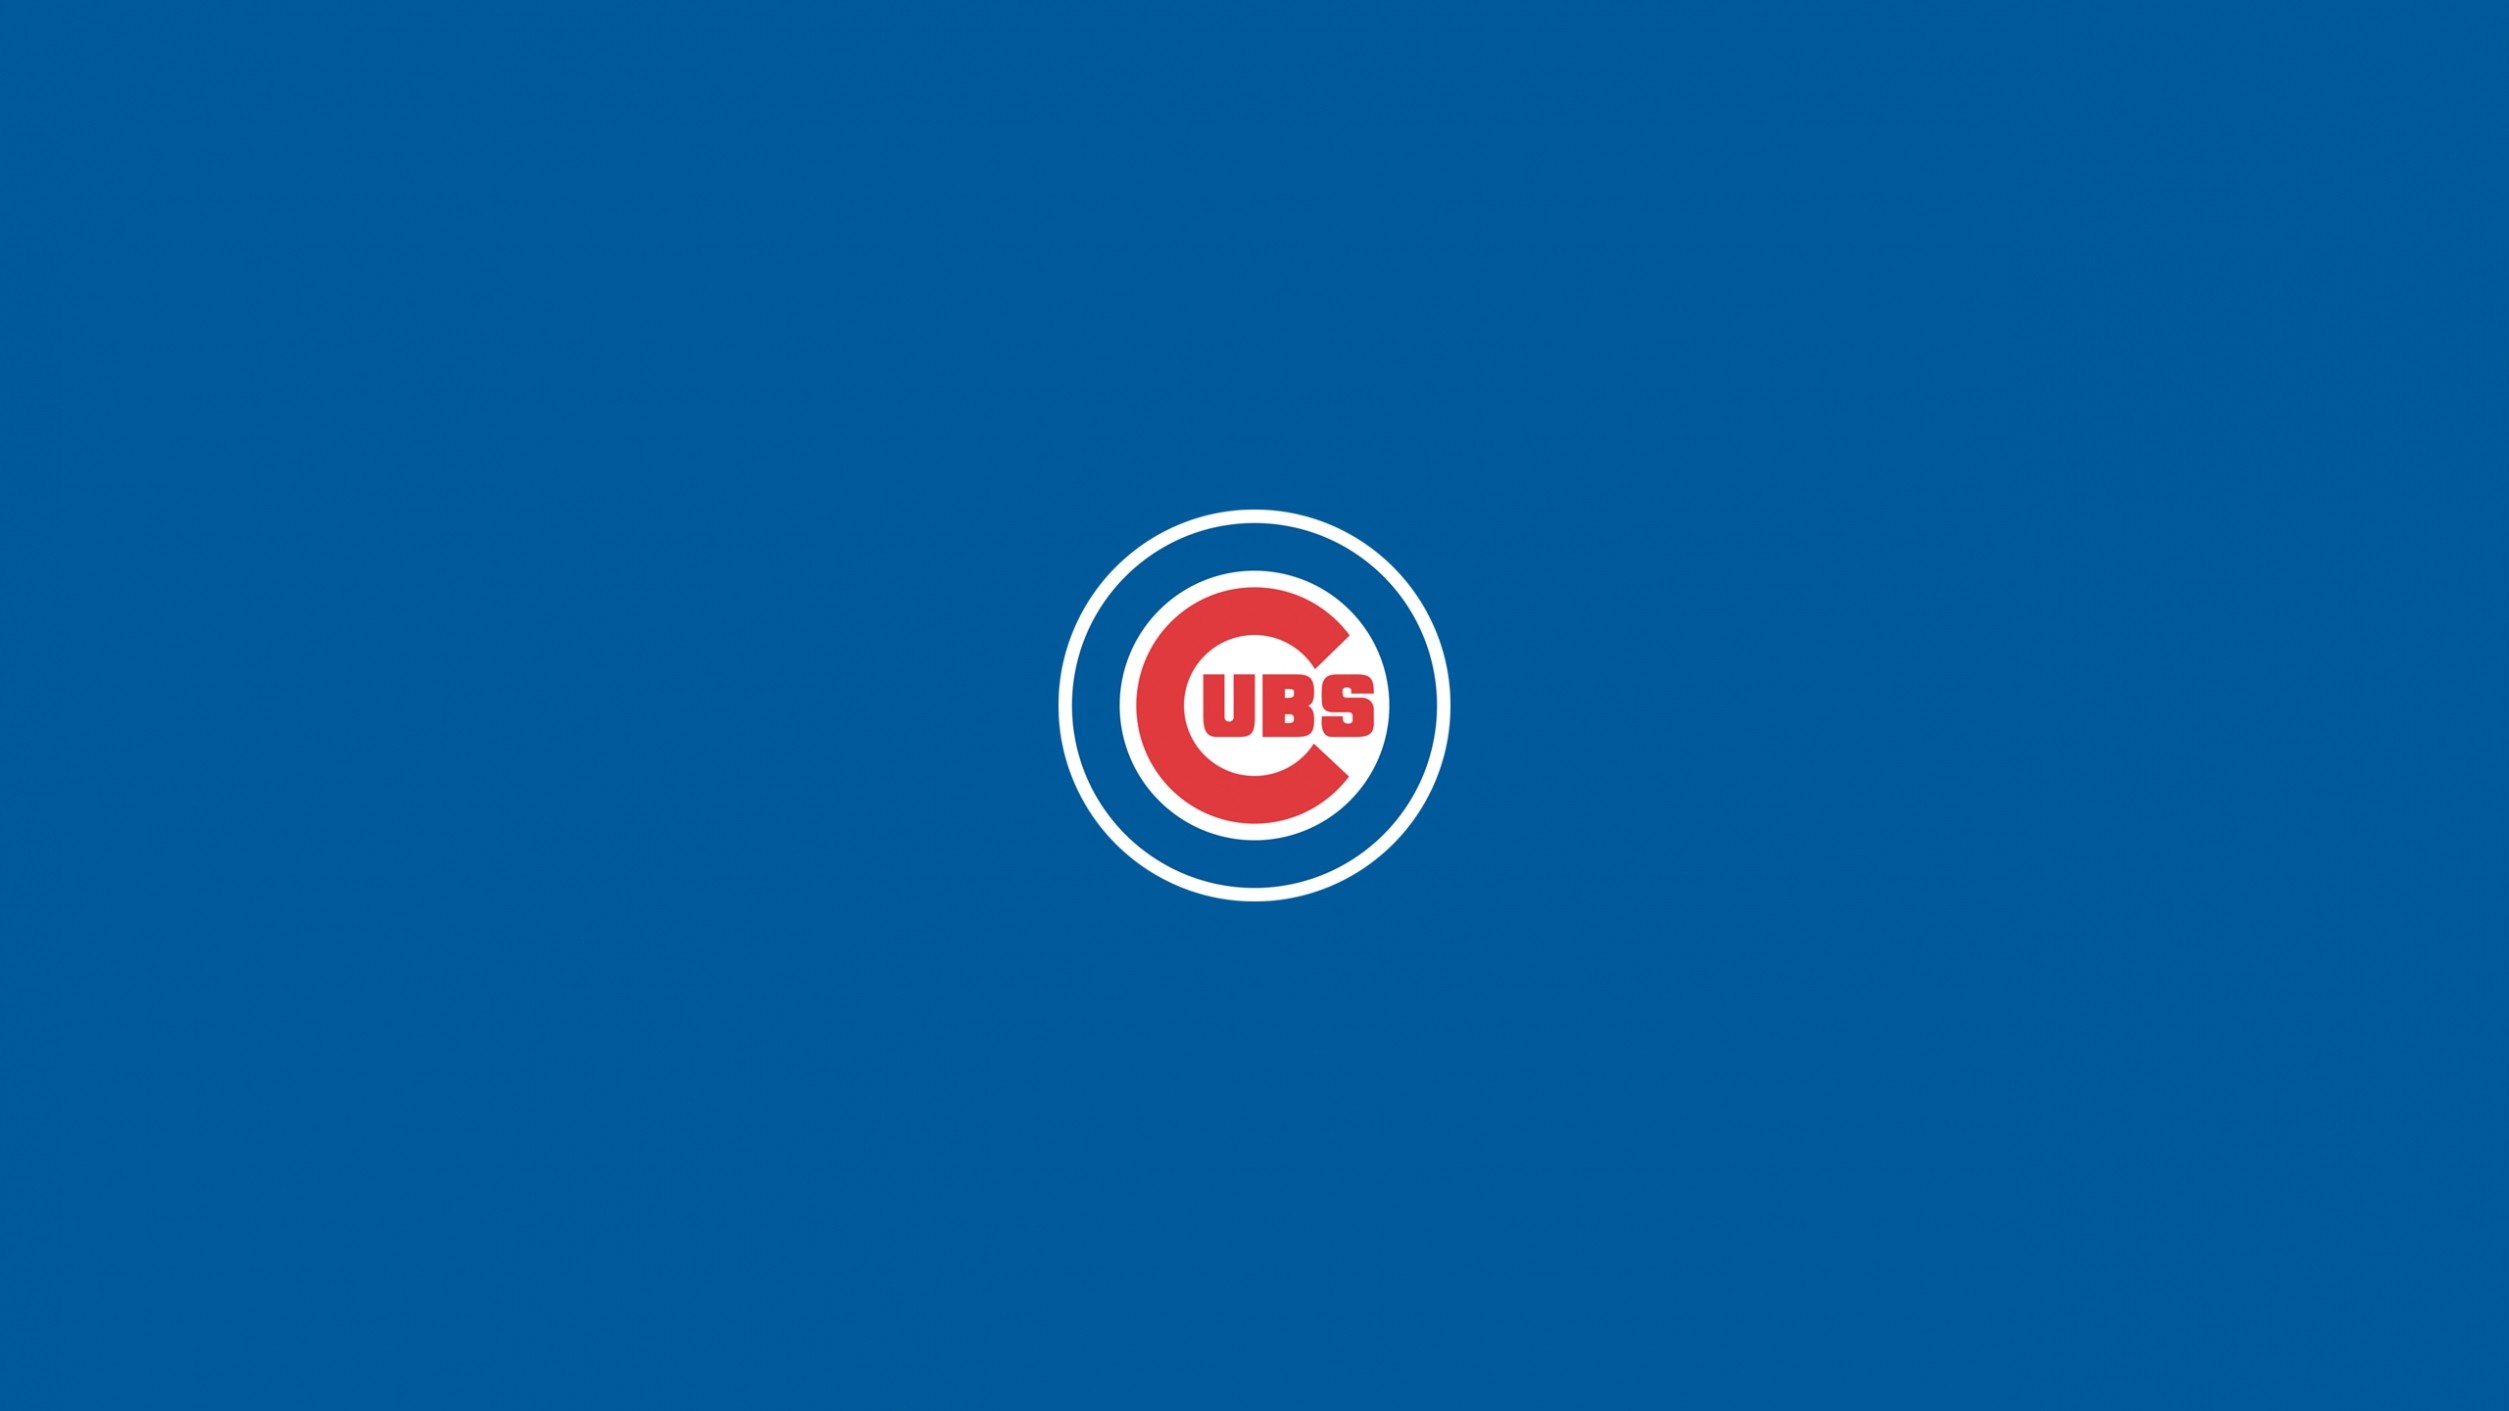 2509x1411 ... Best 25 Cubs wallpaper ideas on Pinterest | Chicago cubs .